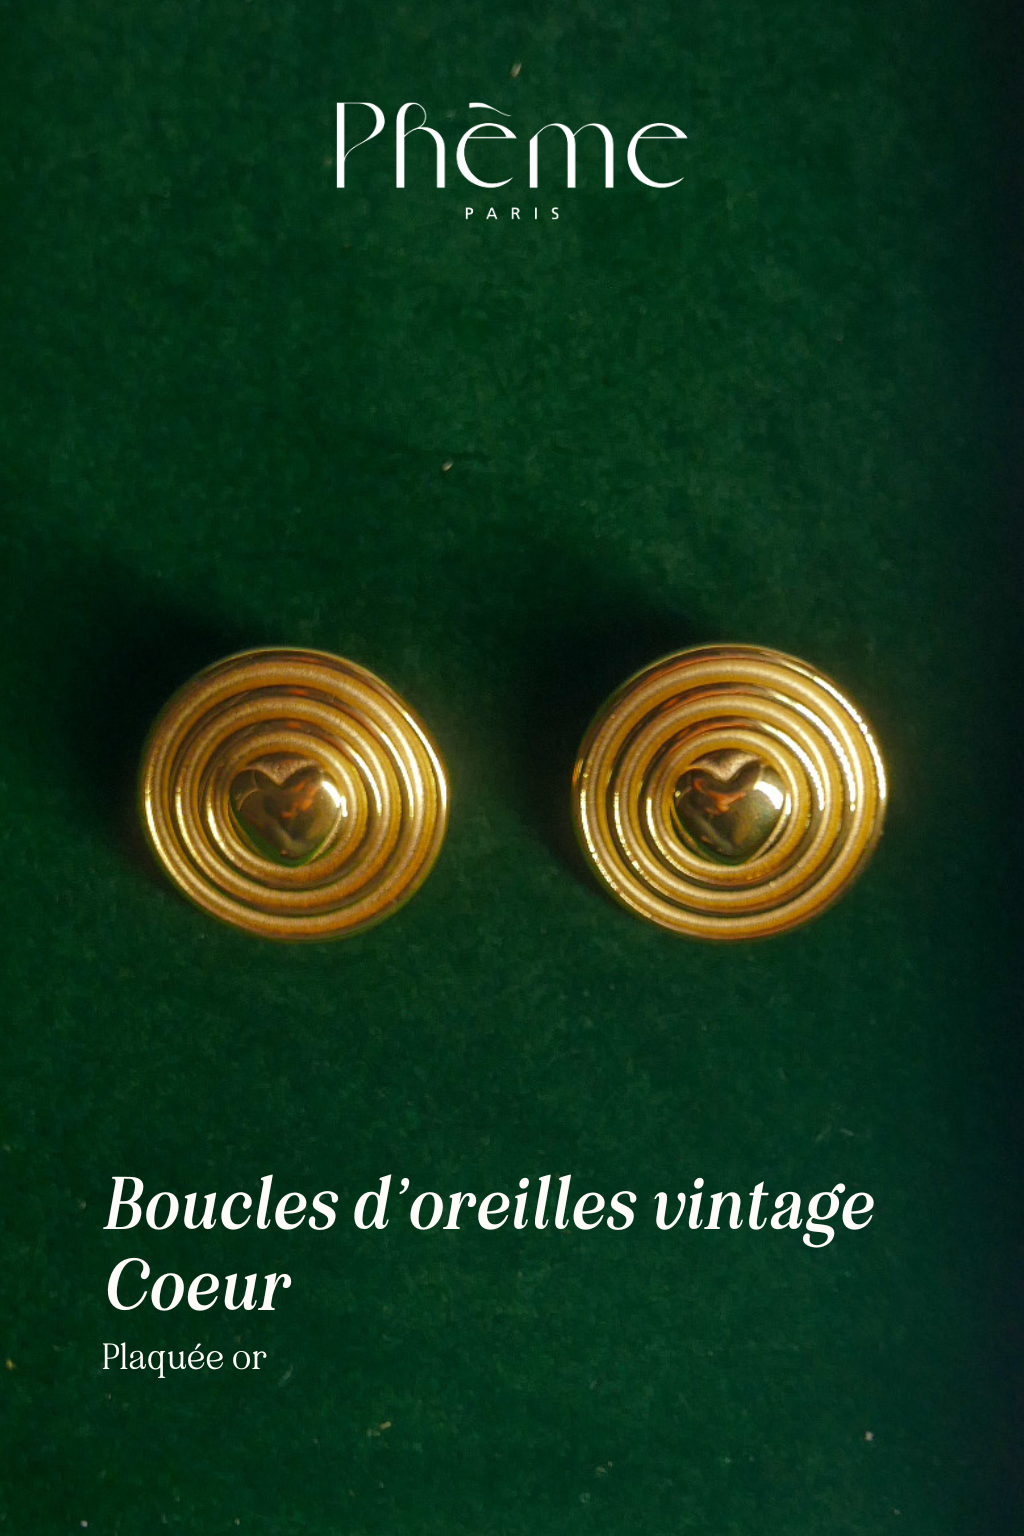 Boucles d'oreilles vintage coeur - plaqué or